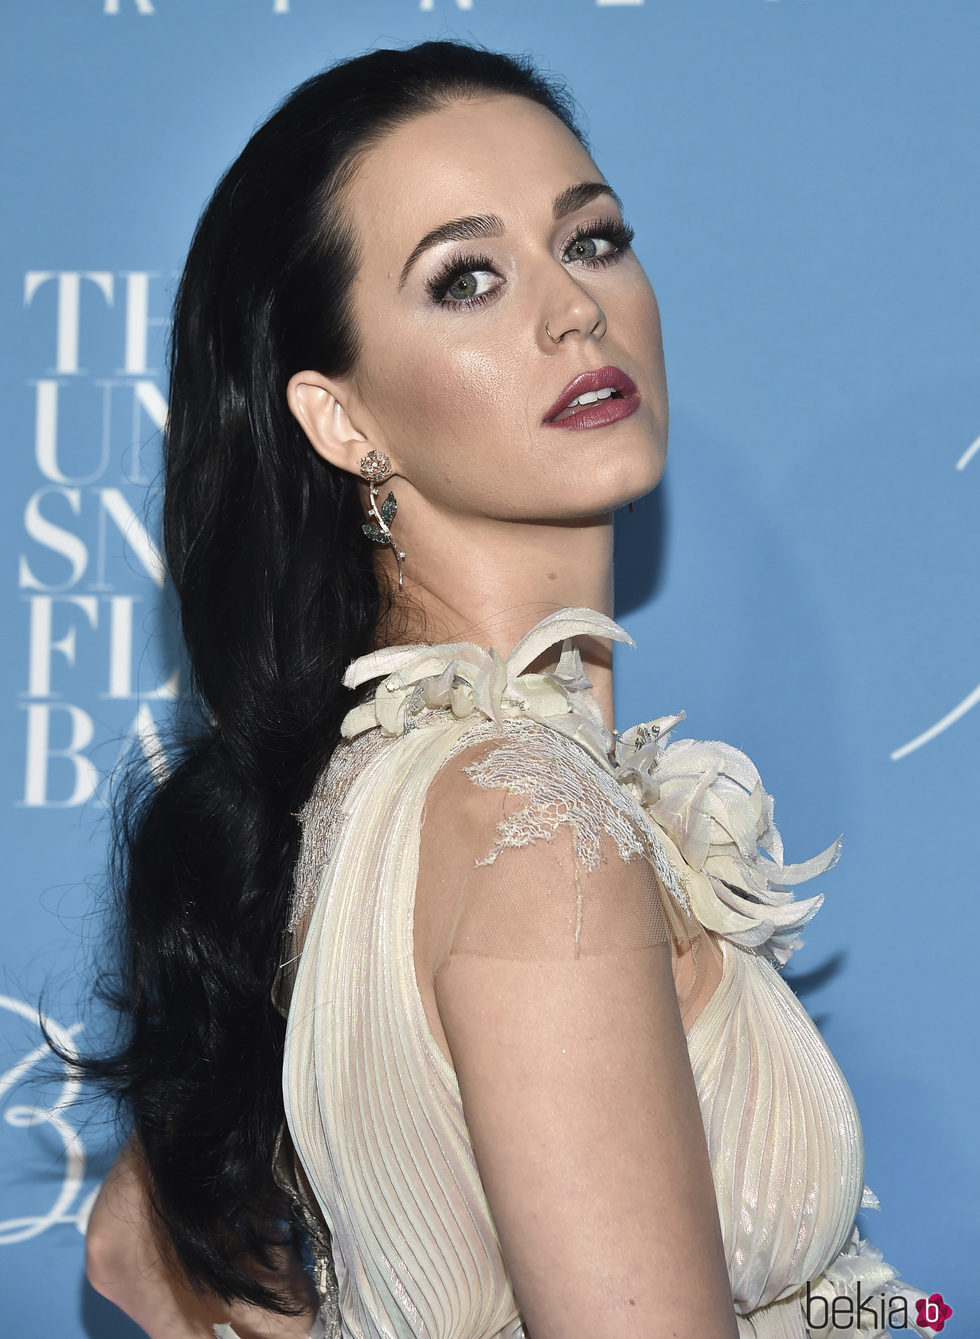 Katy Perry da color a su rostro gracias a los polvos bronceadores